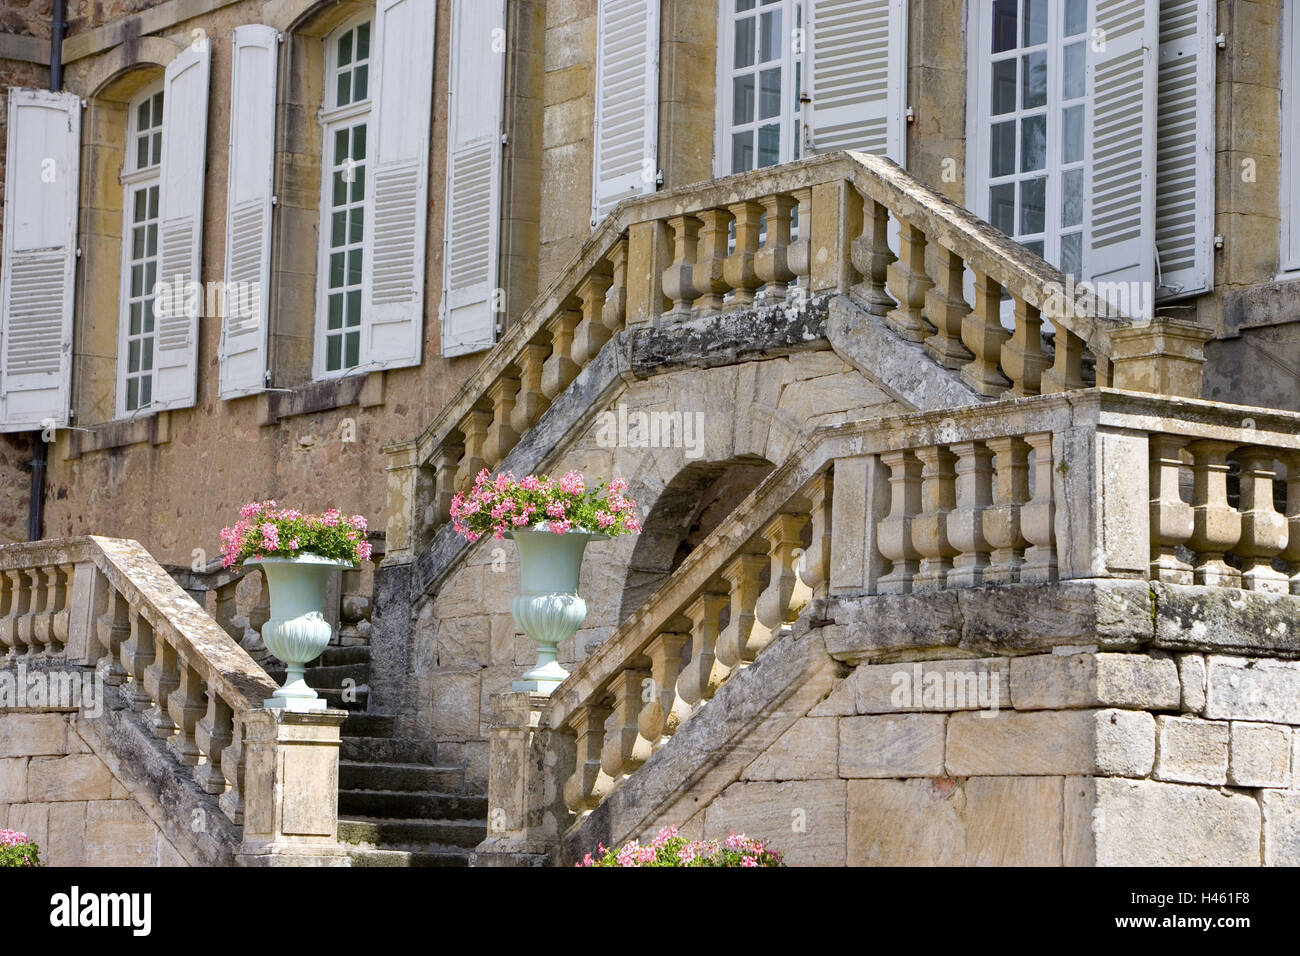 France, Bourgogne, Saone-et-Loire, Charolles, La Clayette, Corbigny, Chateau de Dree, perron, flowers, facade, detail, Stock Photo